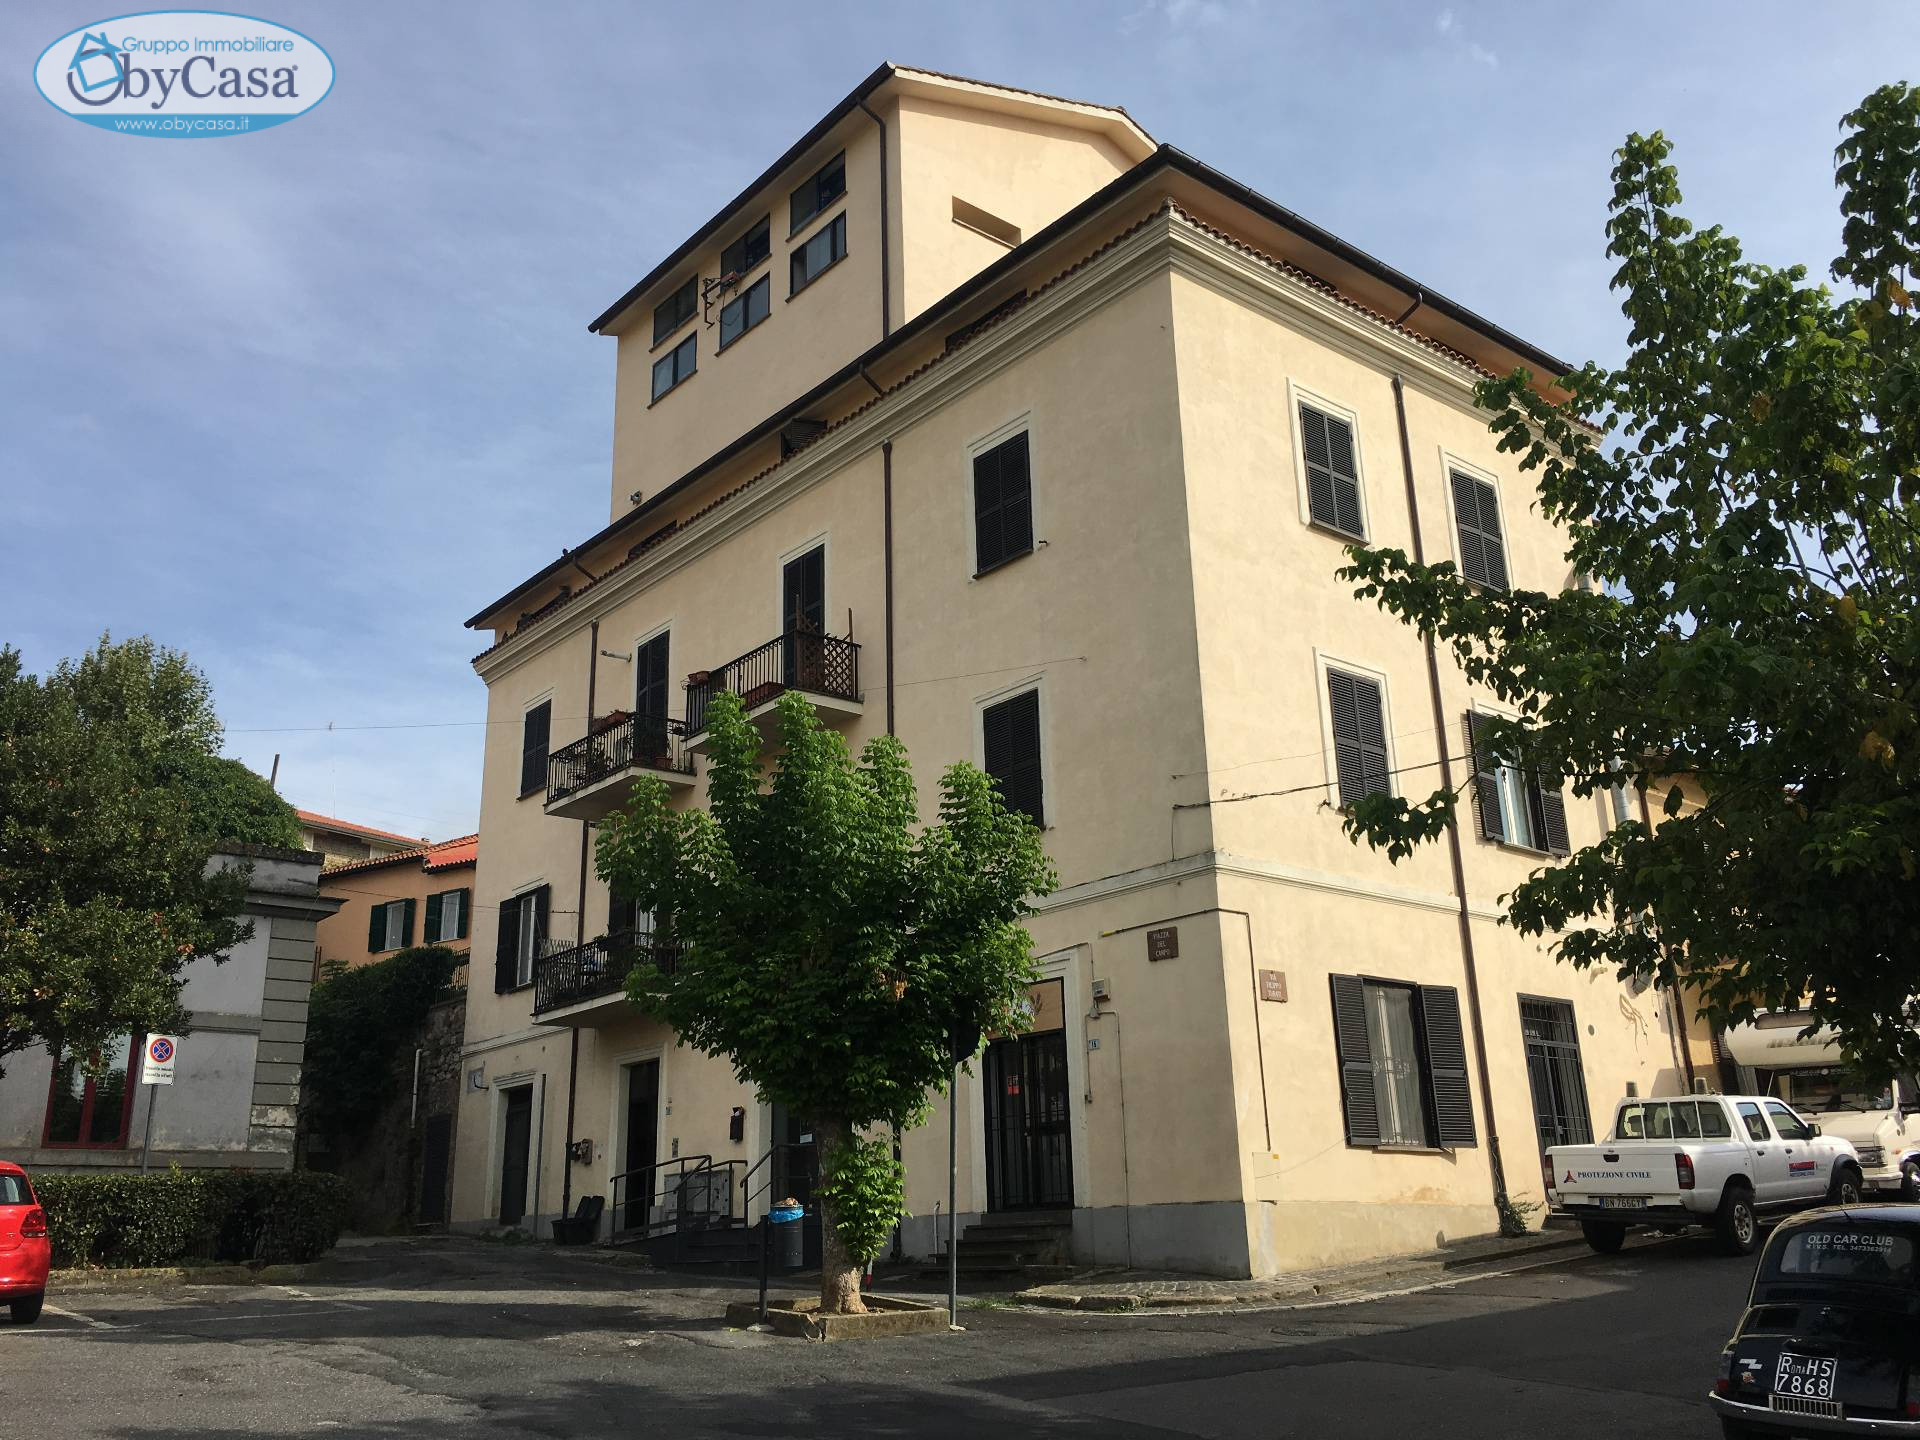 Appartamento in vendita a Canale Monterano, 4 locali, zona Zona: Centro, prezzo € 85.000 | CambioCasa.it